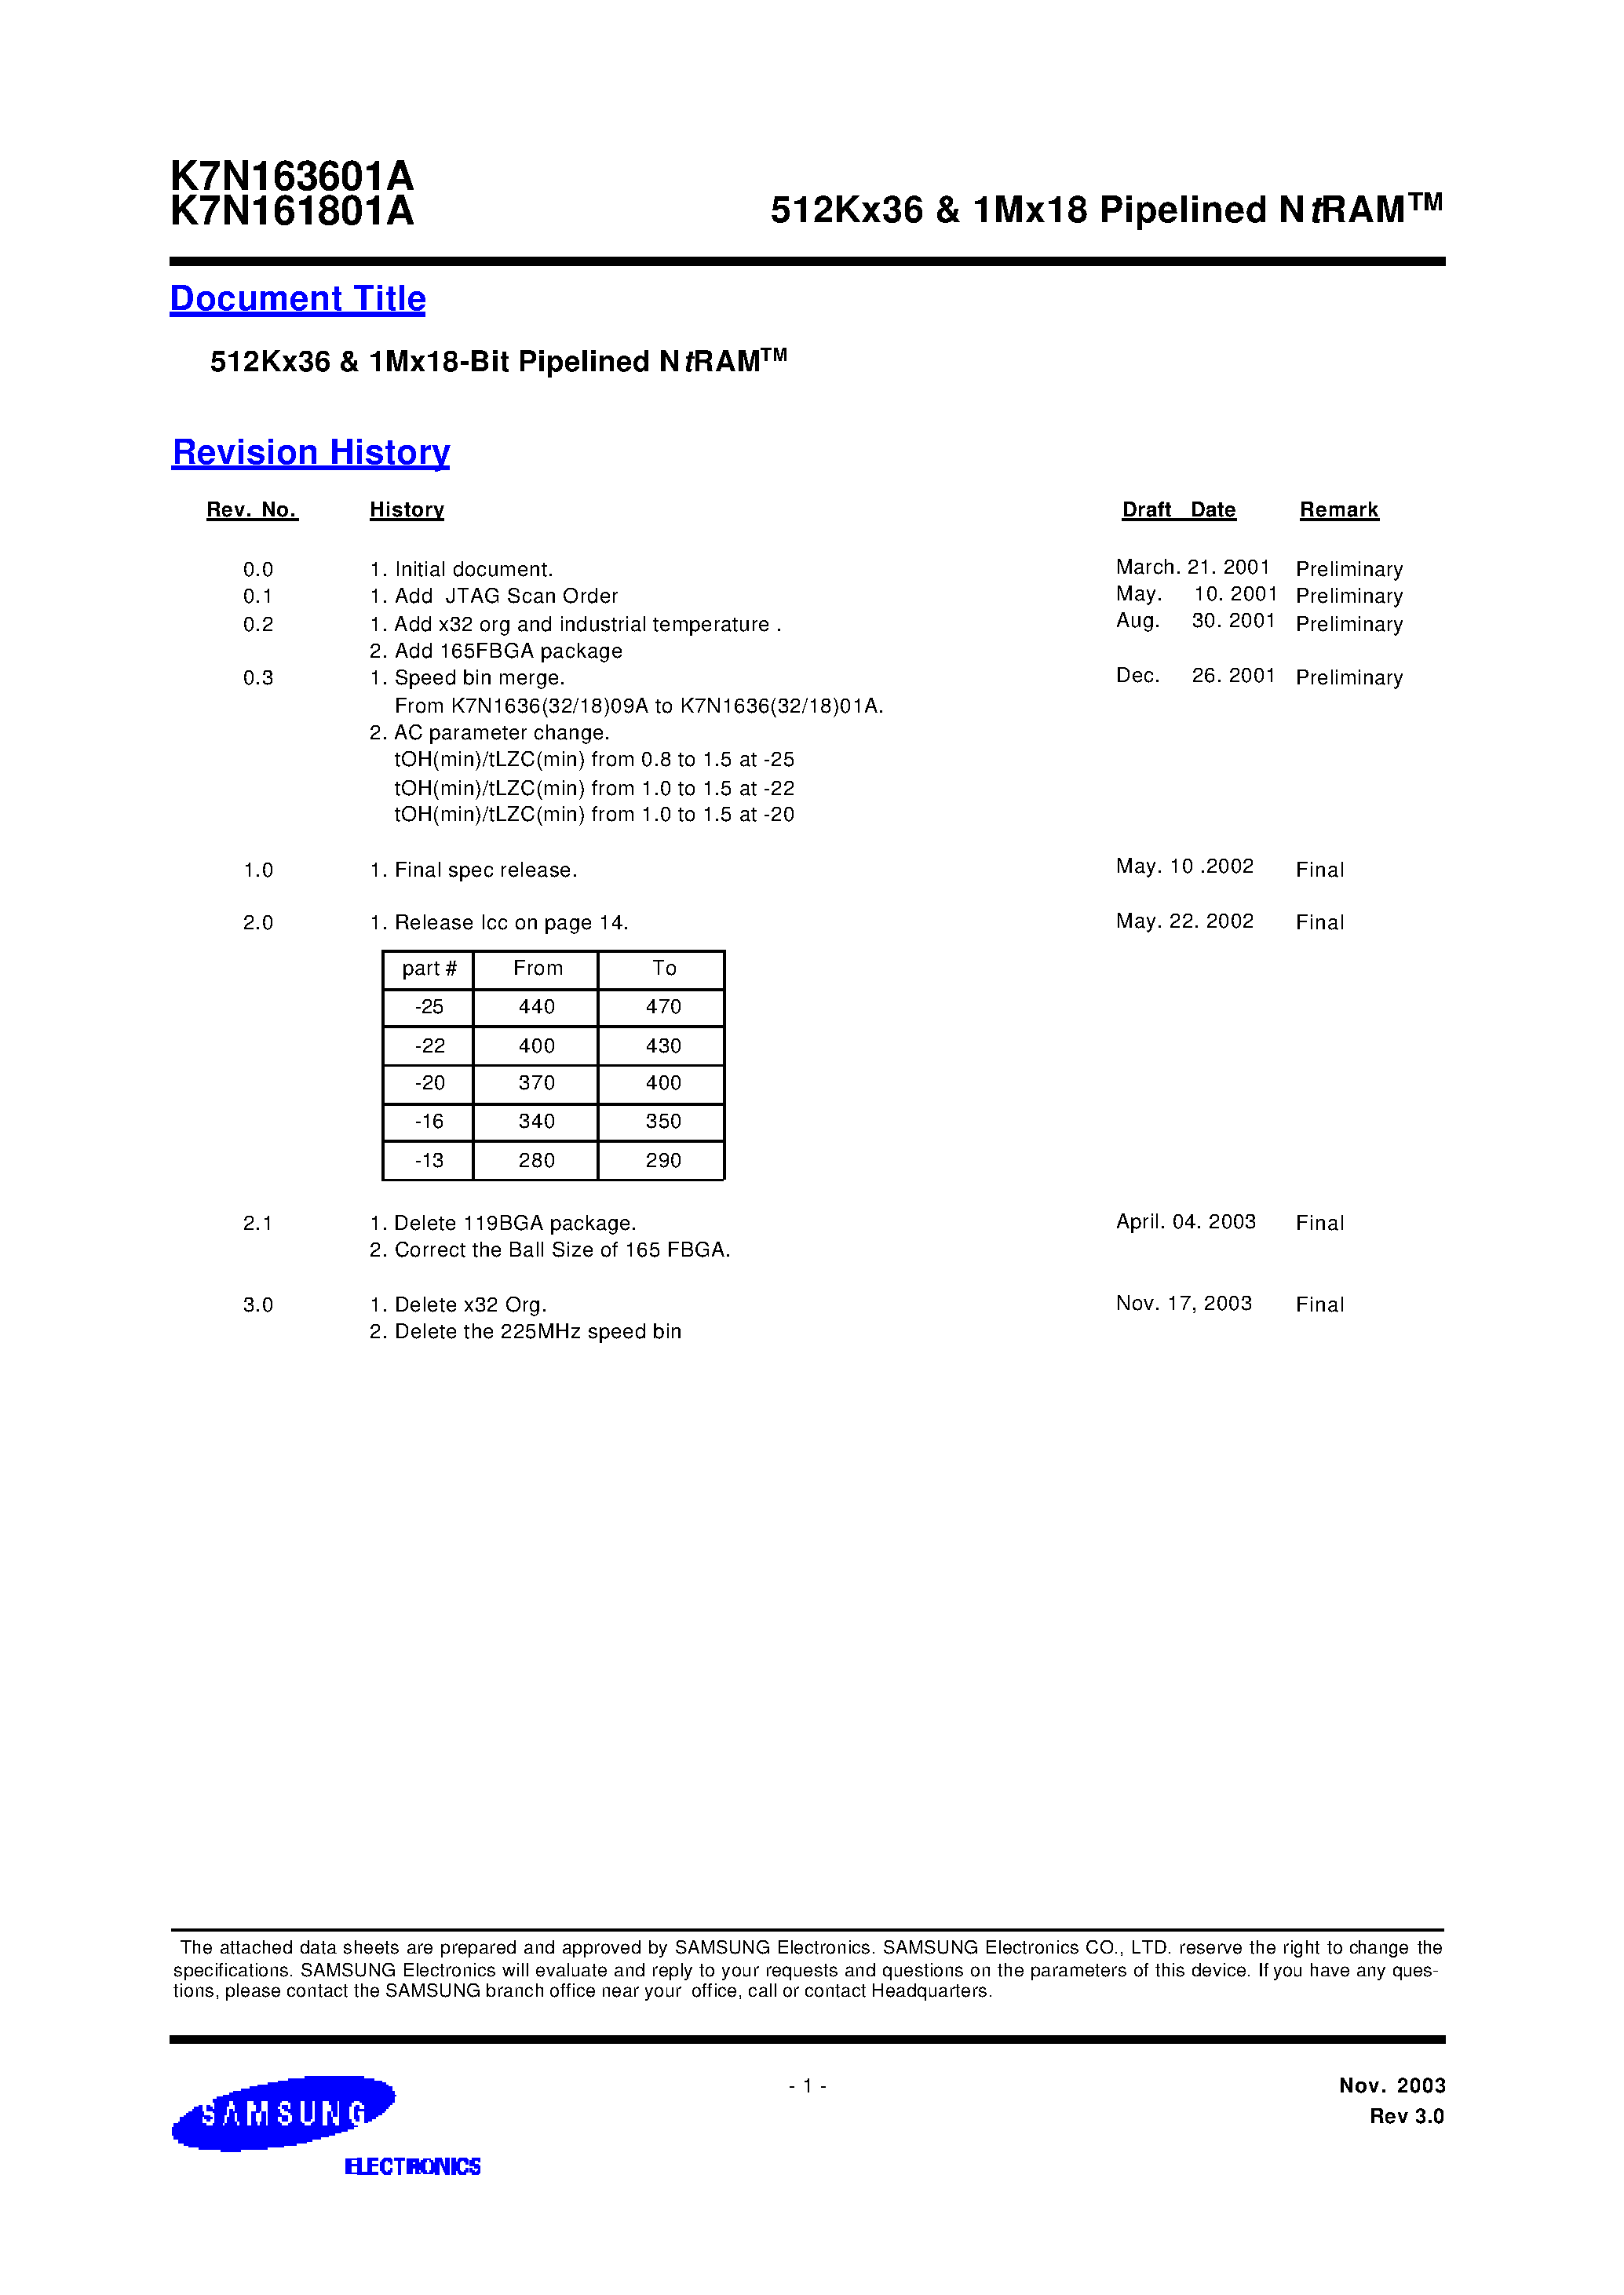 Даташит K7N163601A-Q(F)C(I)16-512Kx36 & 1Mx18 Pipelined NtRAM страница 1